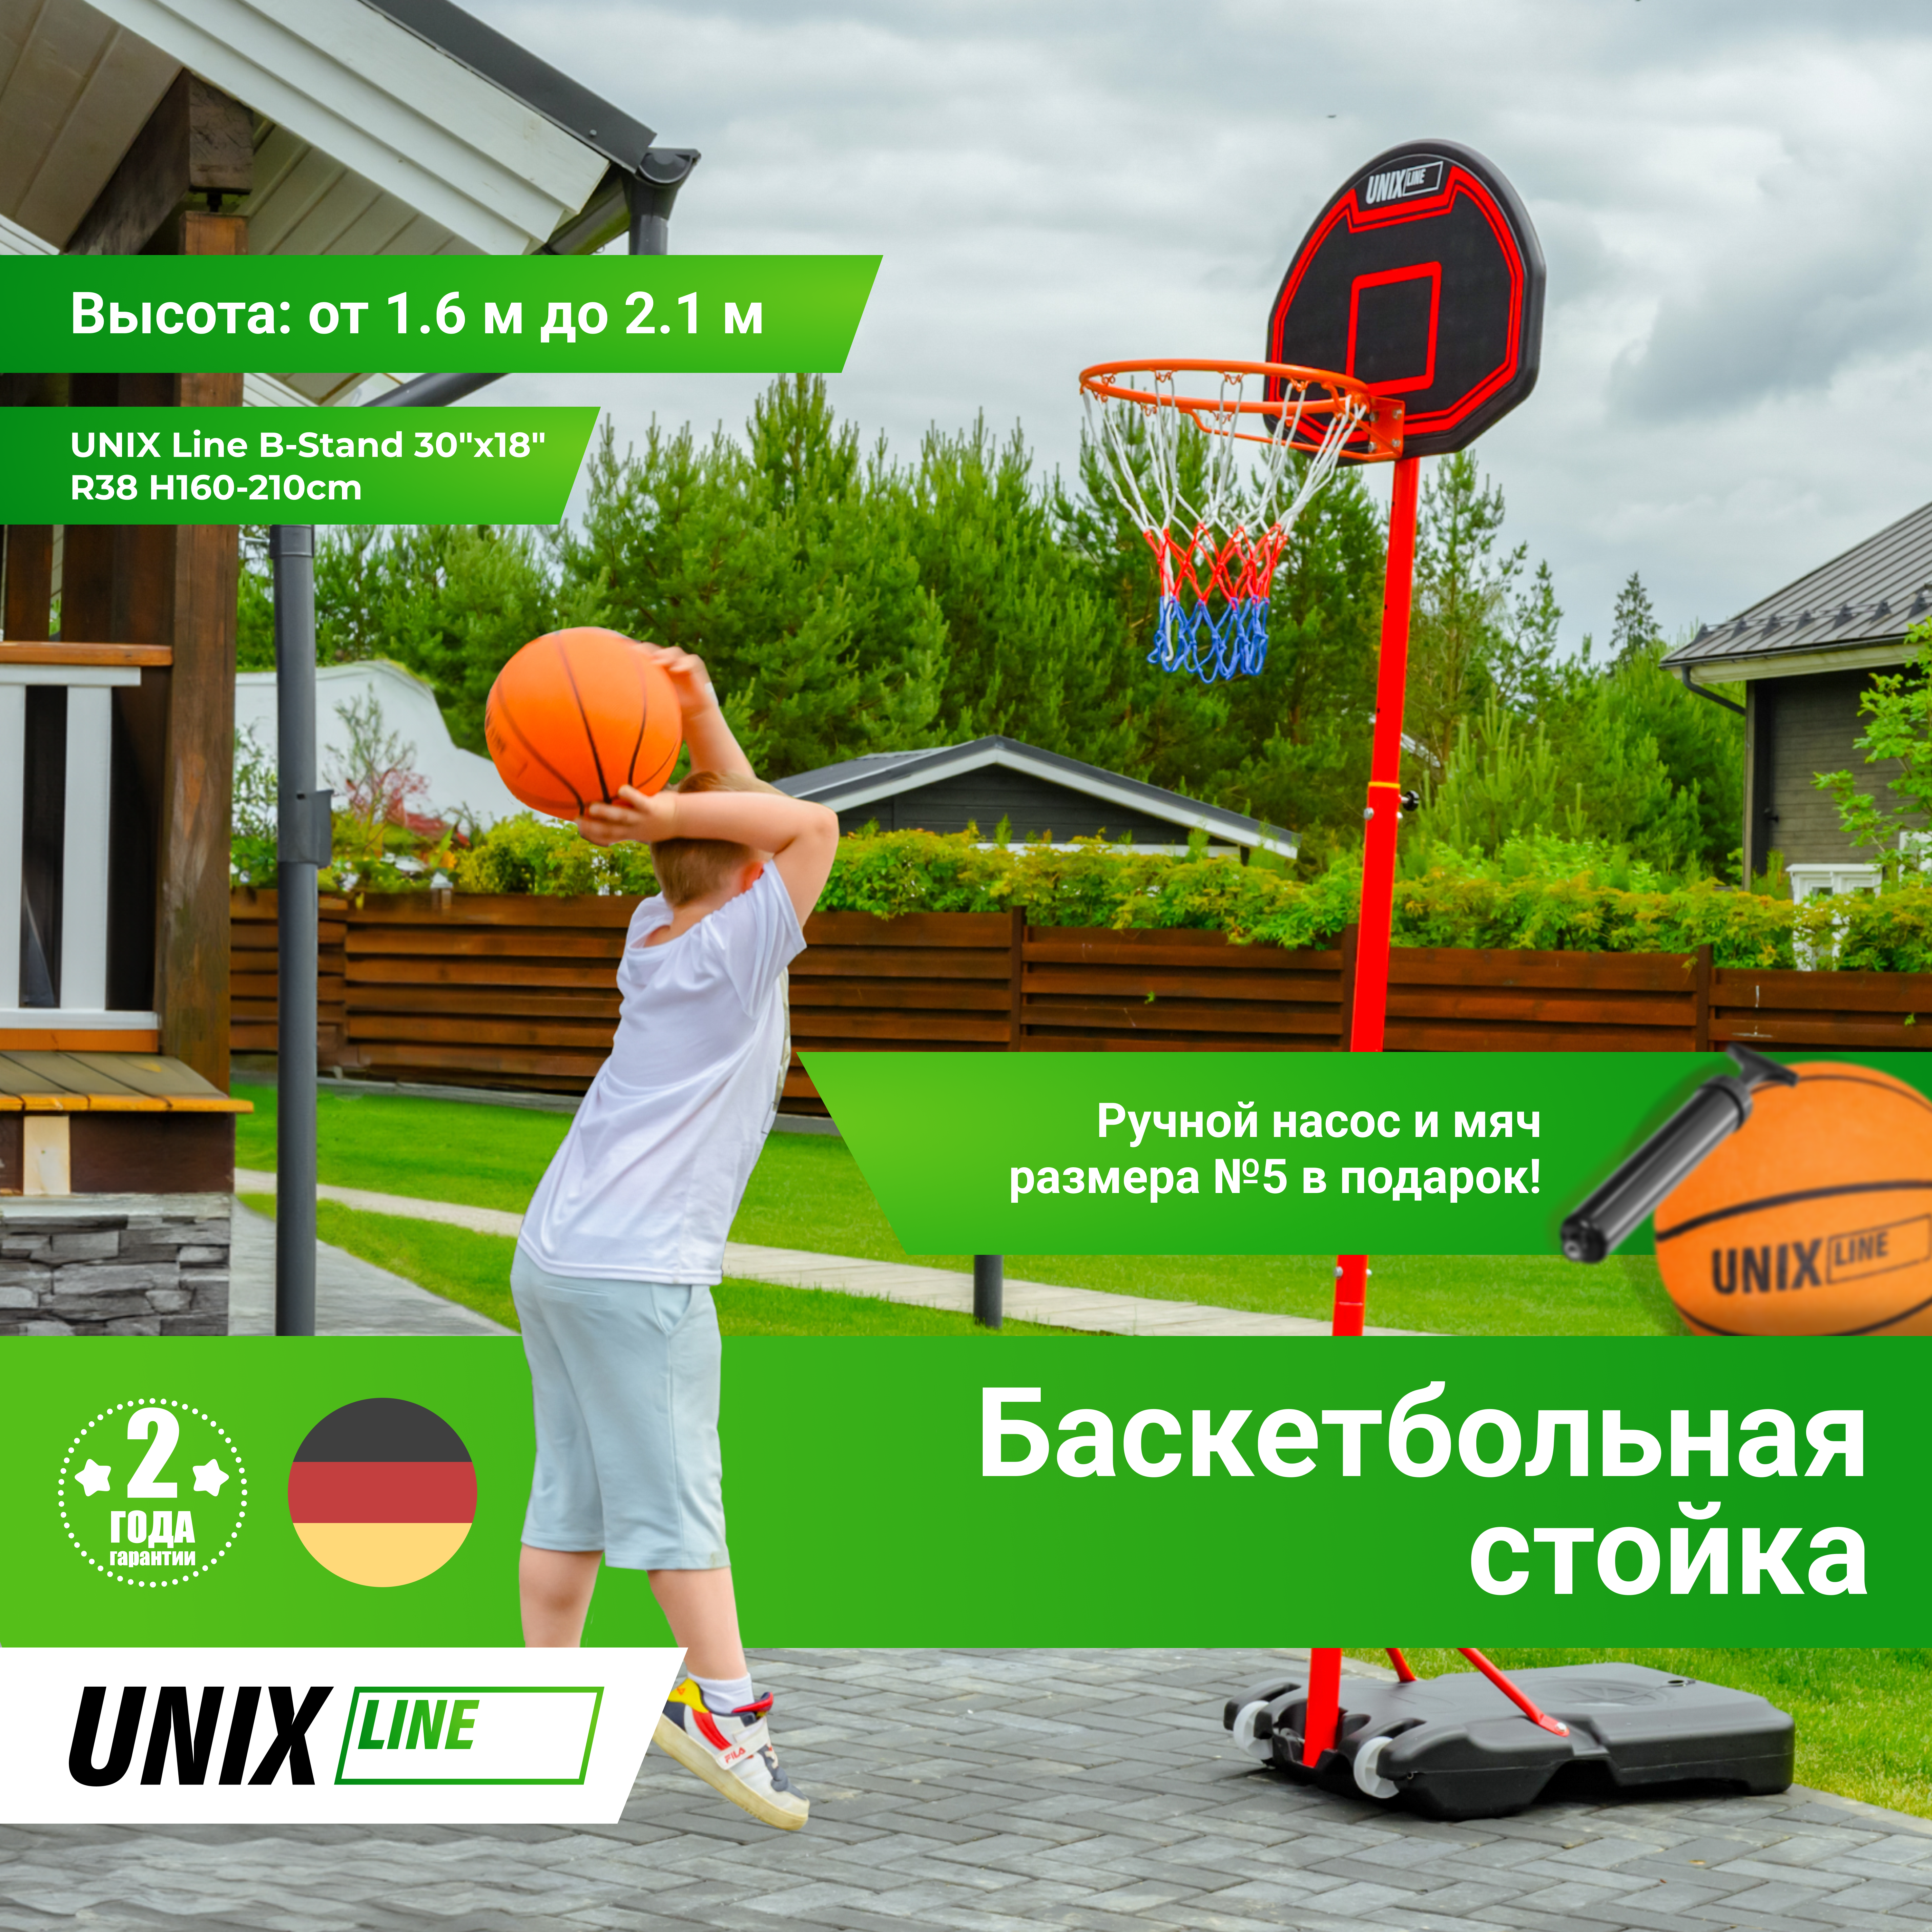 Баскетбольная стойка UNIX Line B-Stand 30"x18" R38 H160-210cm - 3 